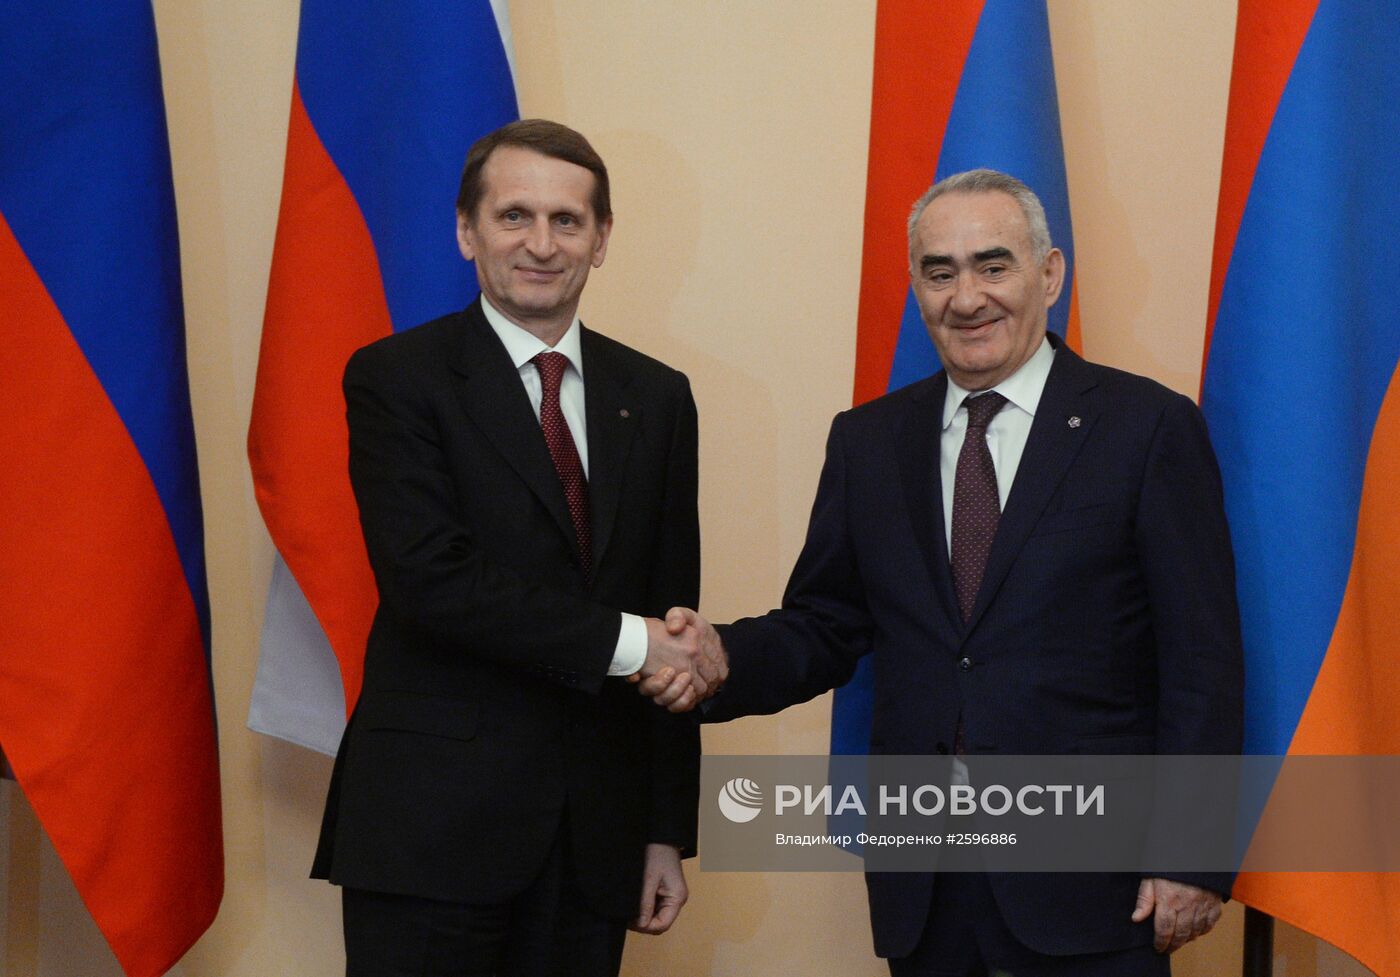 Рабочая поездка председателя Госдумы РФ С.Нарышкина в Армению